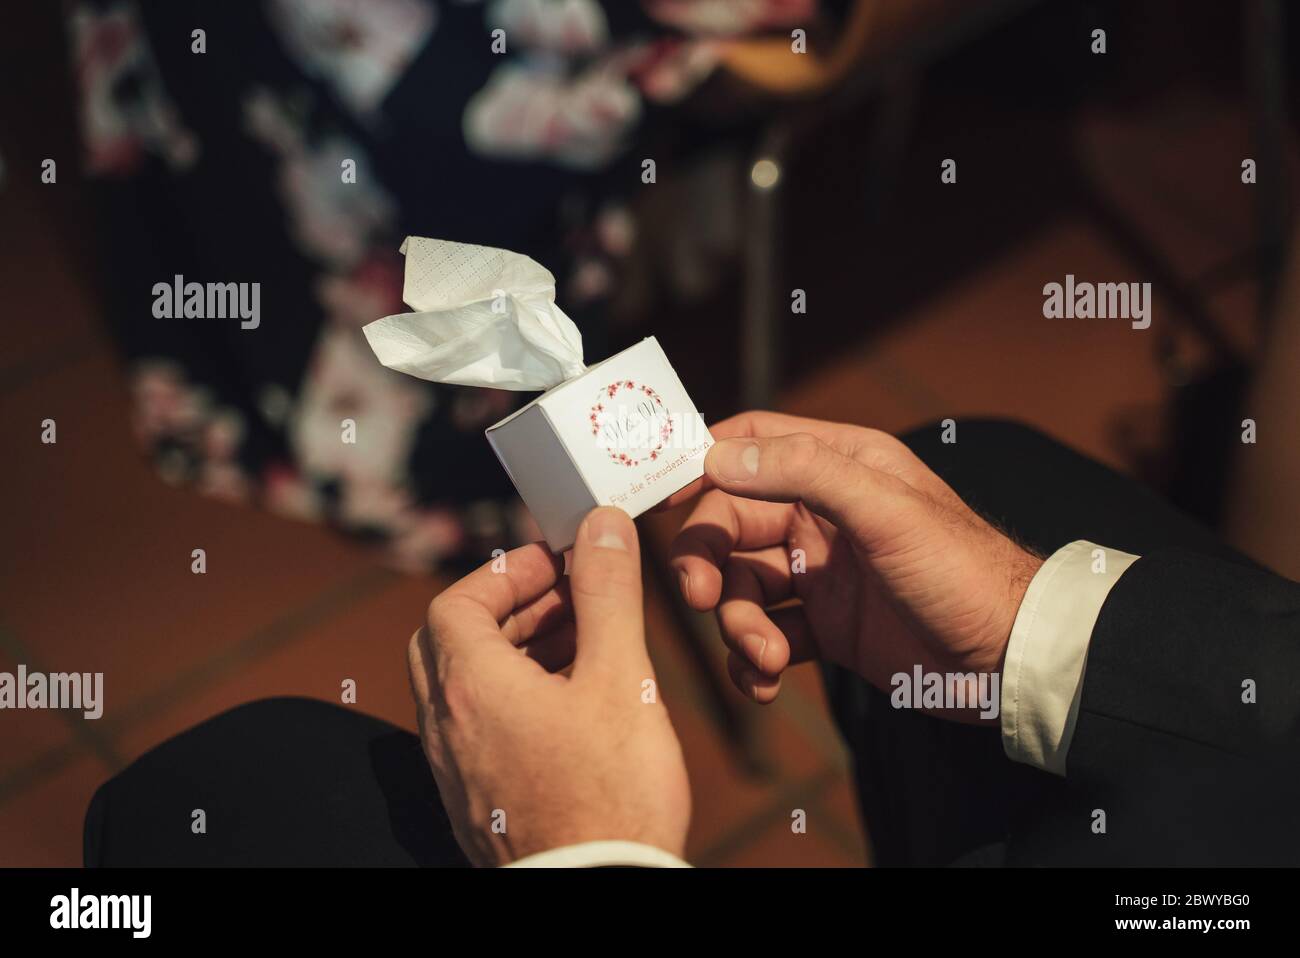 Gros plan photo de mains masculines habillées, portant une petite boîte de  mouchoirs en papier. Traduction: 'Pour les larmes du bonheur'. Concept de  mariage Photo Stock - Alamy